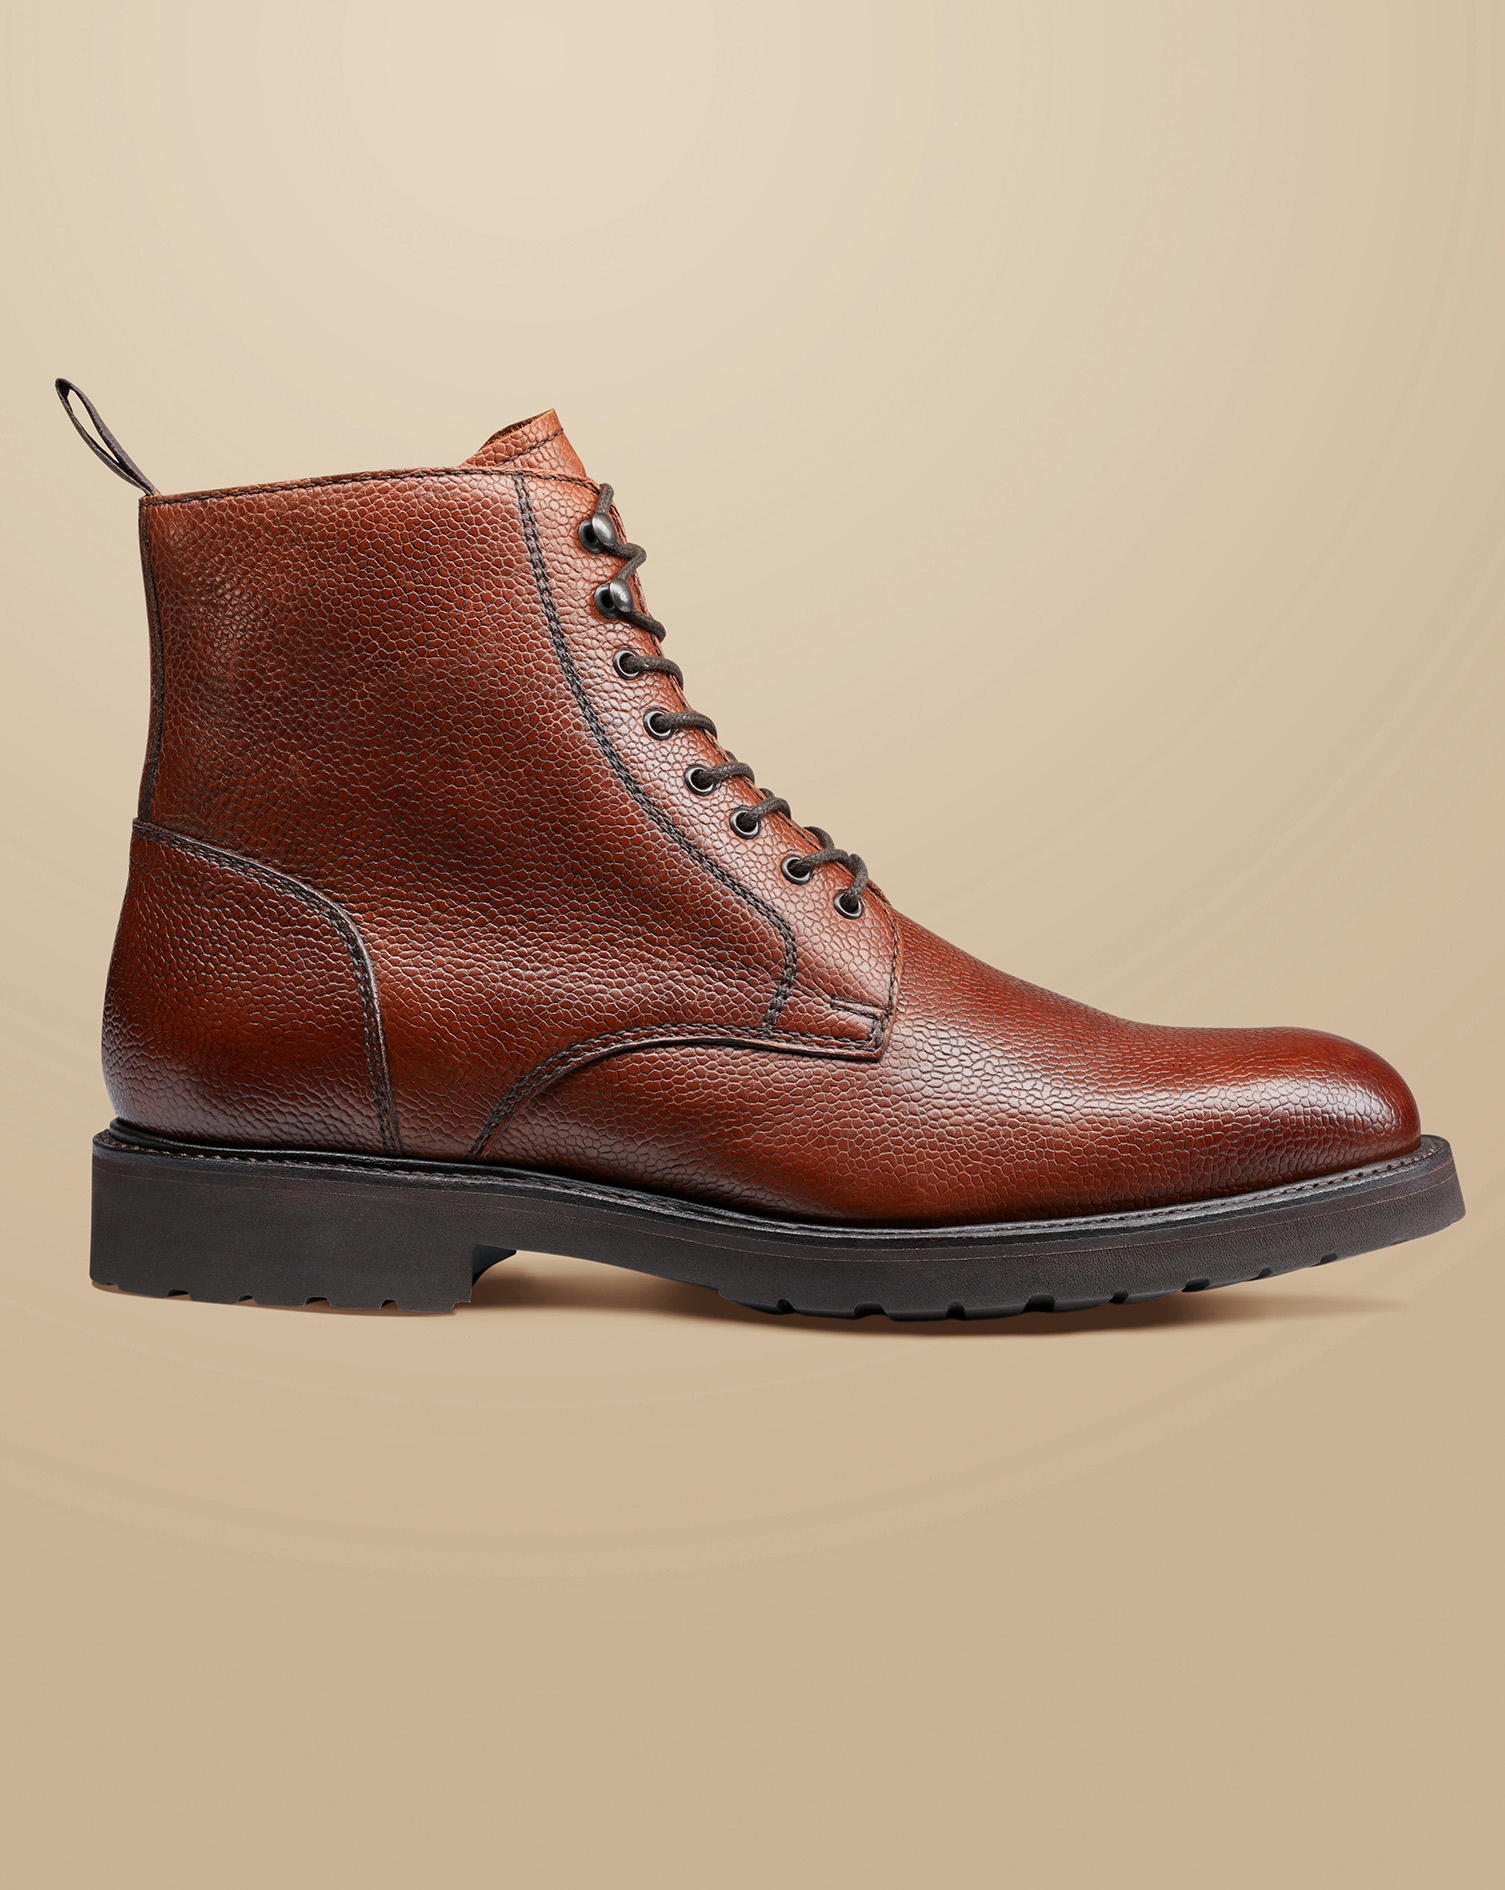 Men's Charles Tyrwhitt Grain Leather Boots - Chestnut Brown Size 13
